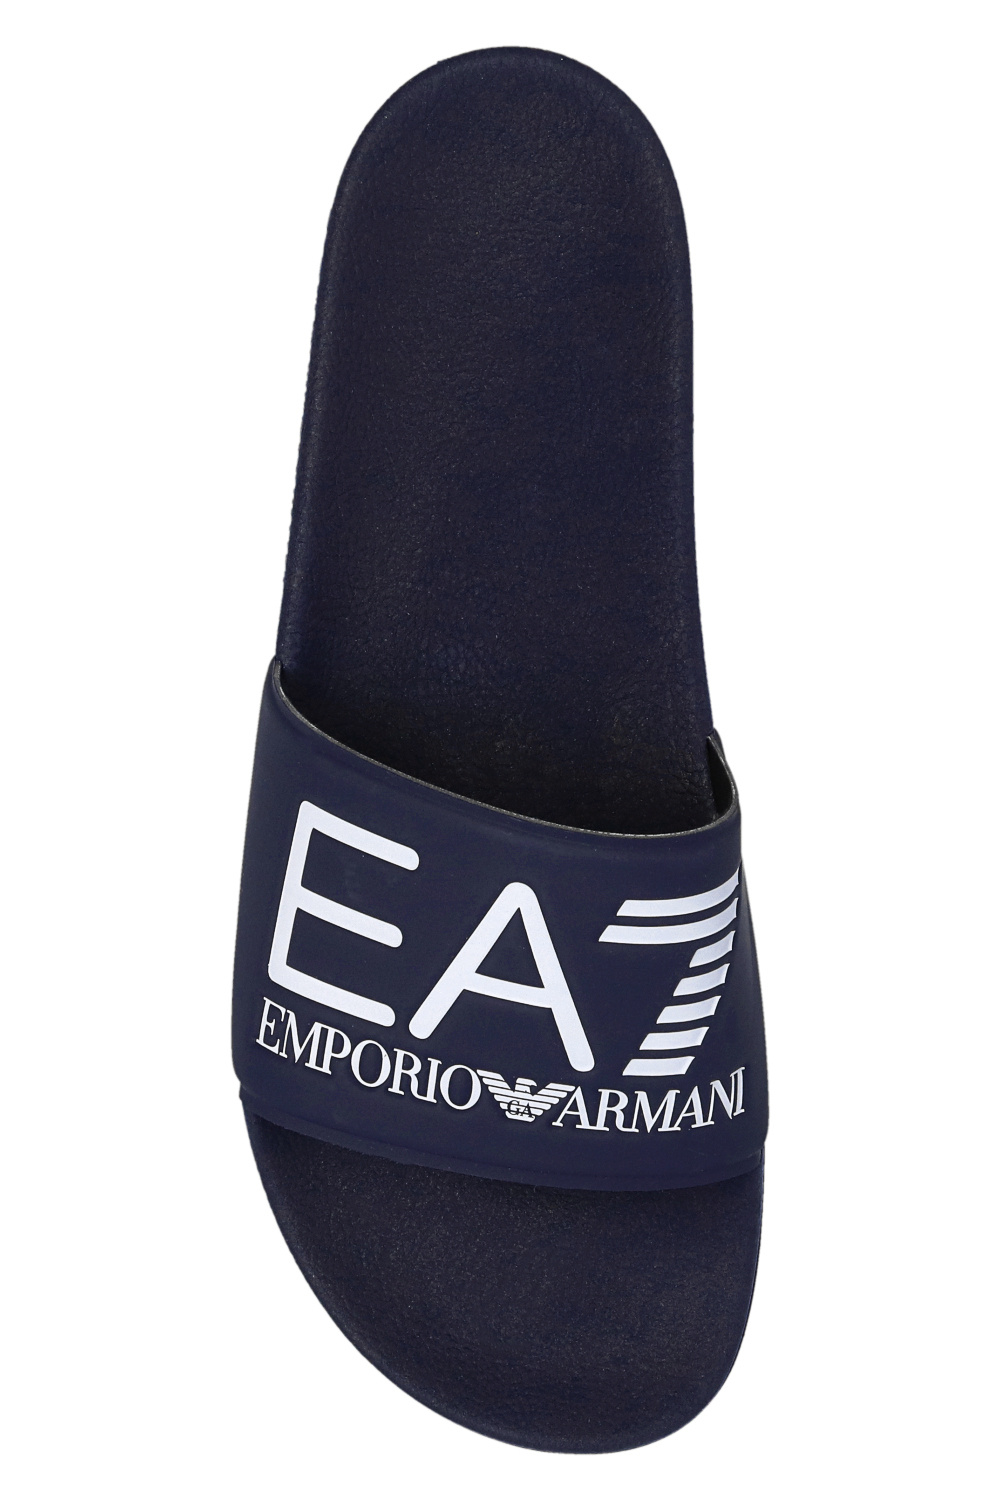 print shirt | Giorgio Armani notched-collar double-breasted blazer Blau |  IetpShops - EA7 Emporio Armani Emporio Armani zigzag - Men's Shoes